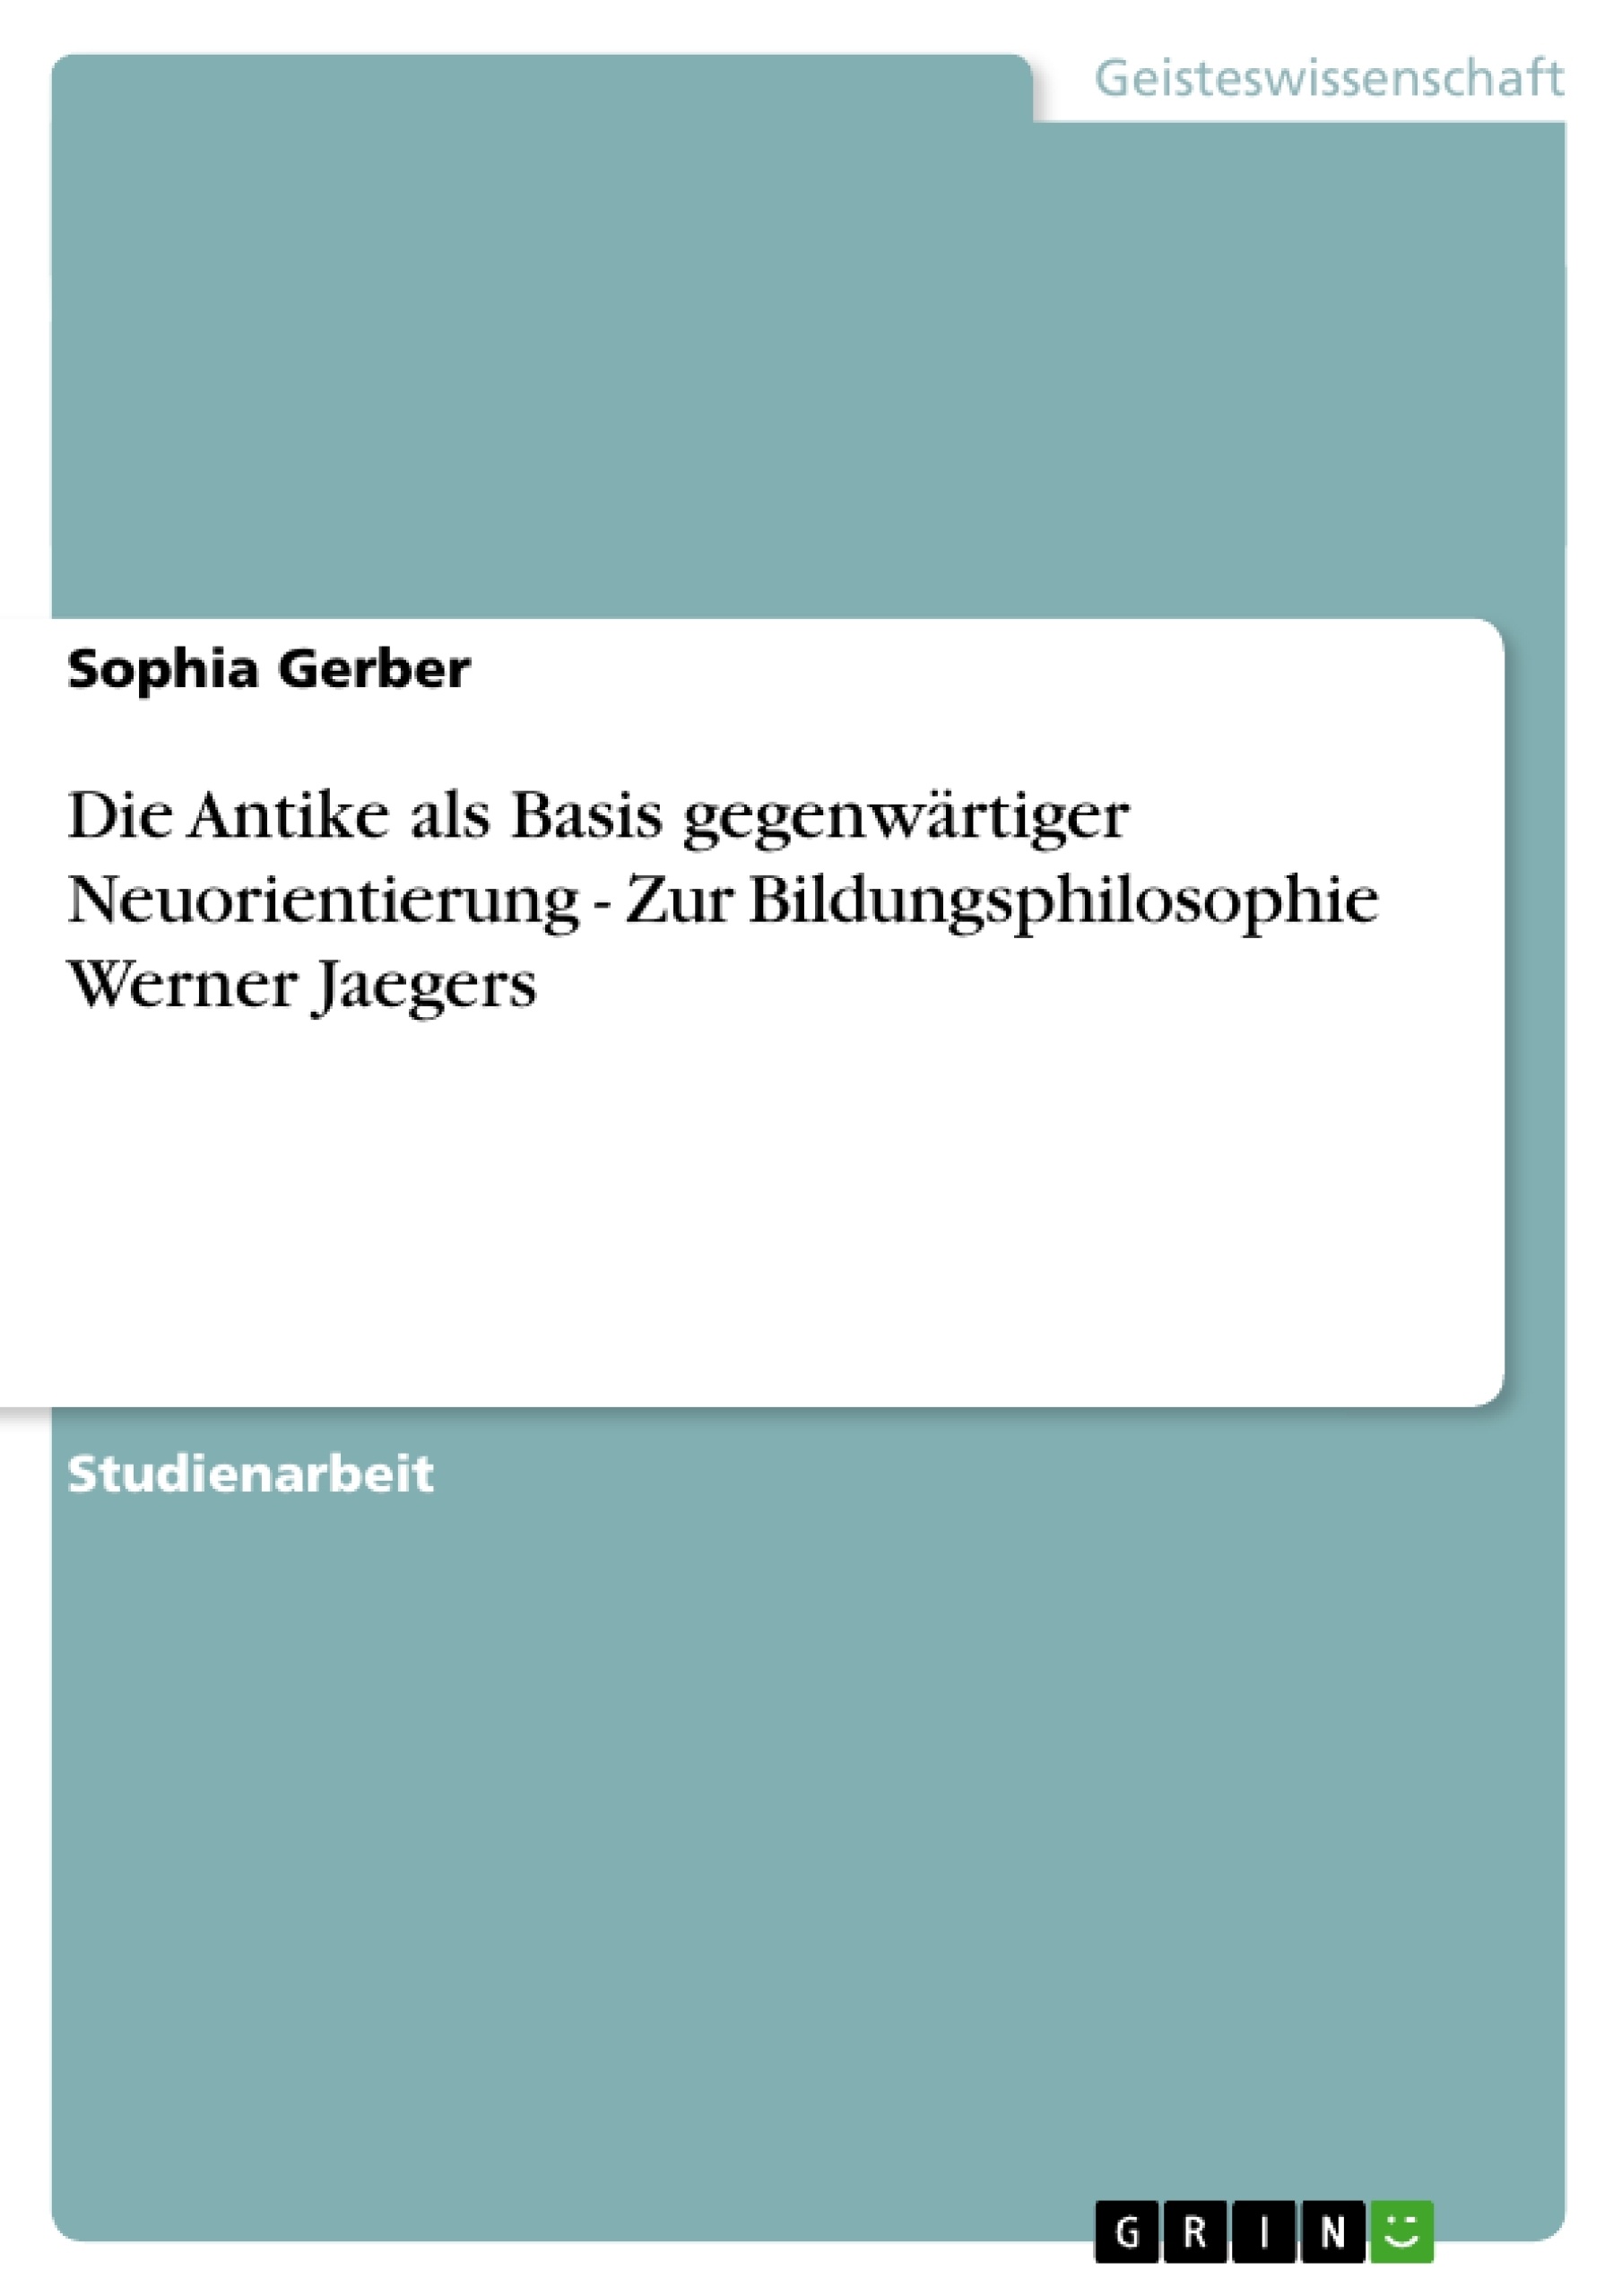 Título: Die Antike als Basis gegenwärtiger Neuorientierung - Zur Bildungsphilosophie Werner Jaegers